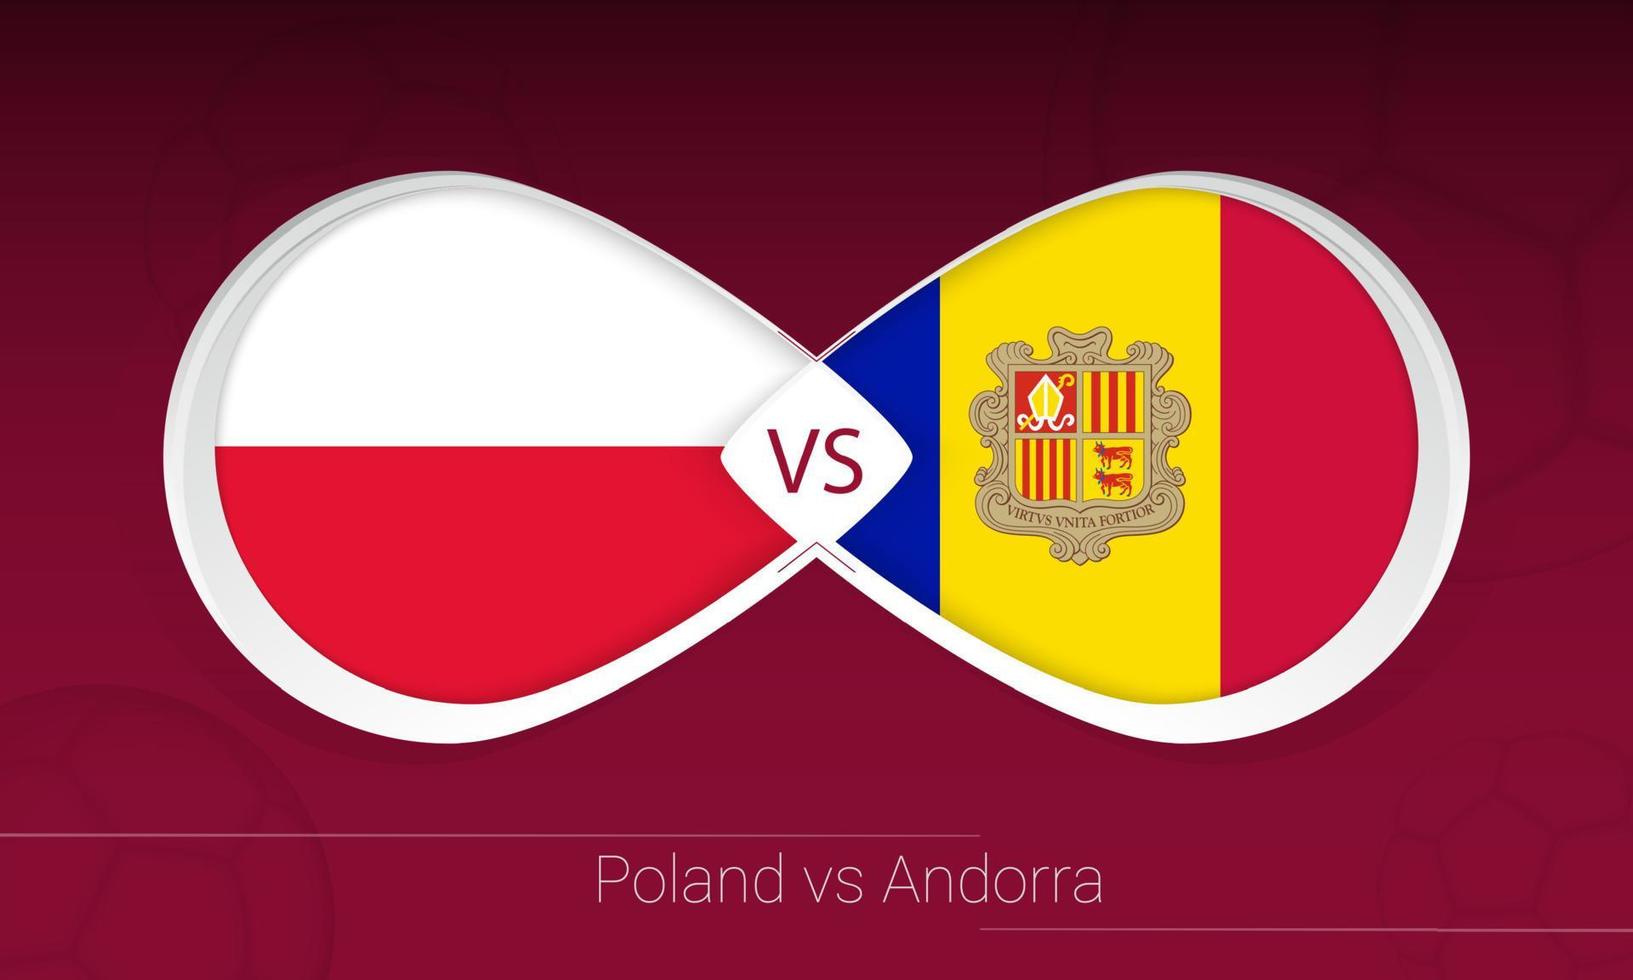 Polónia vs Andorra na competição de futebol, grupo i. contra o ícone no fundo do futebol. vetor